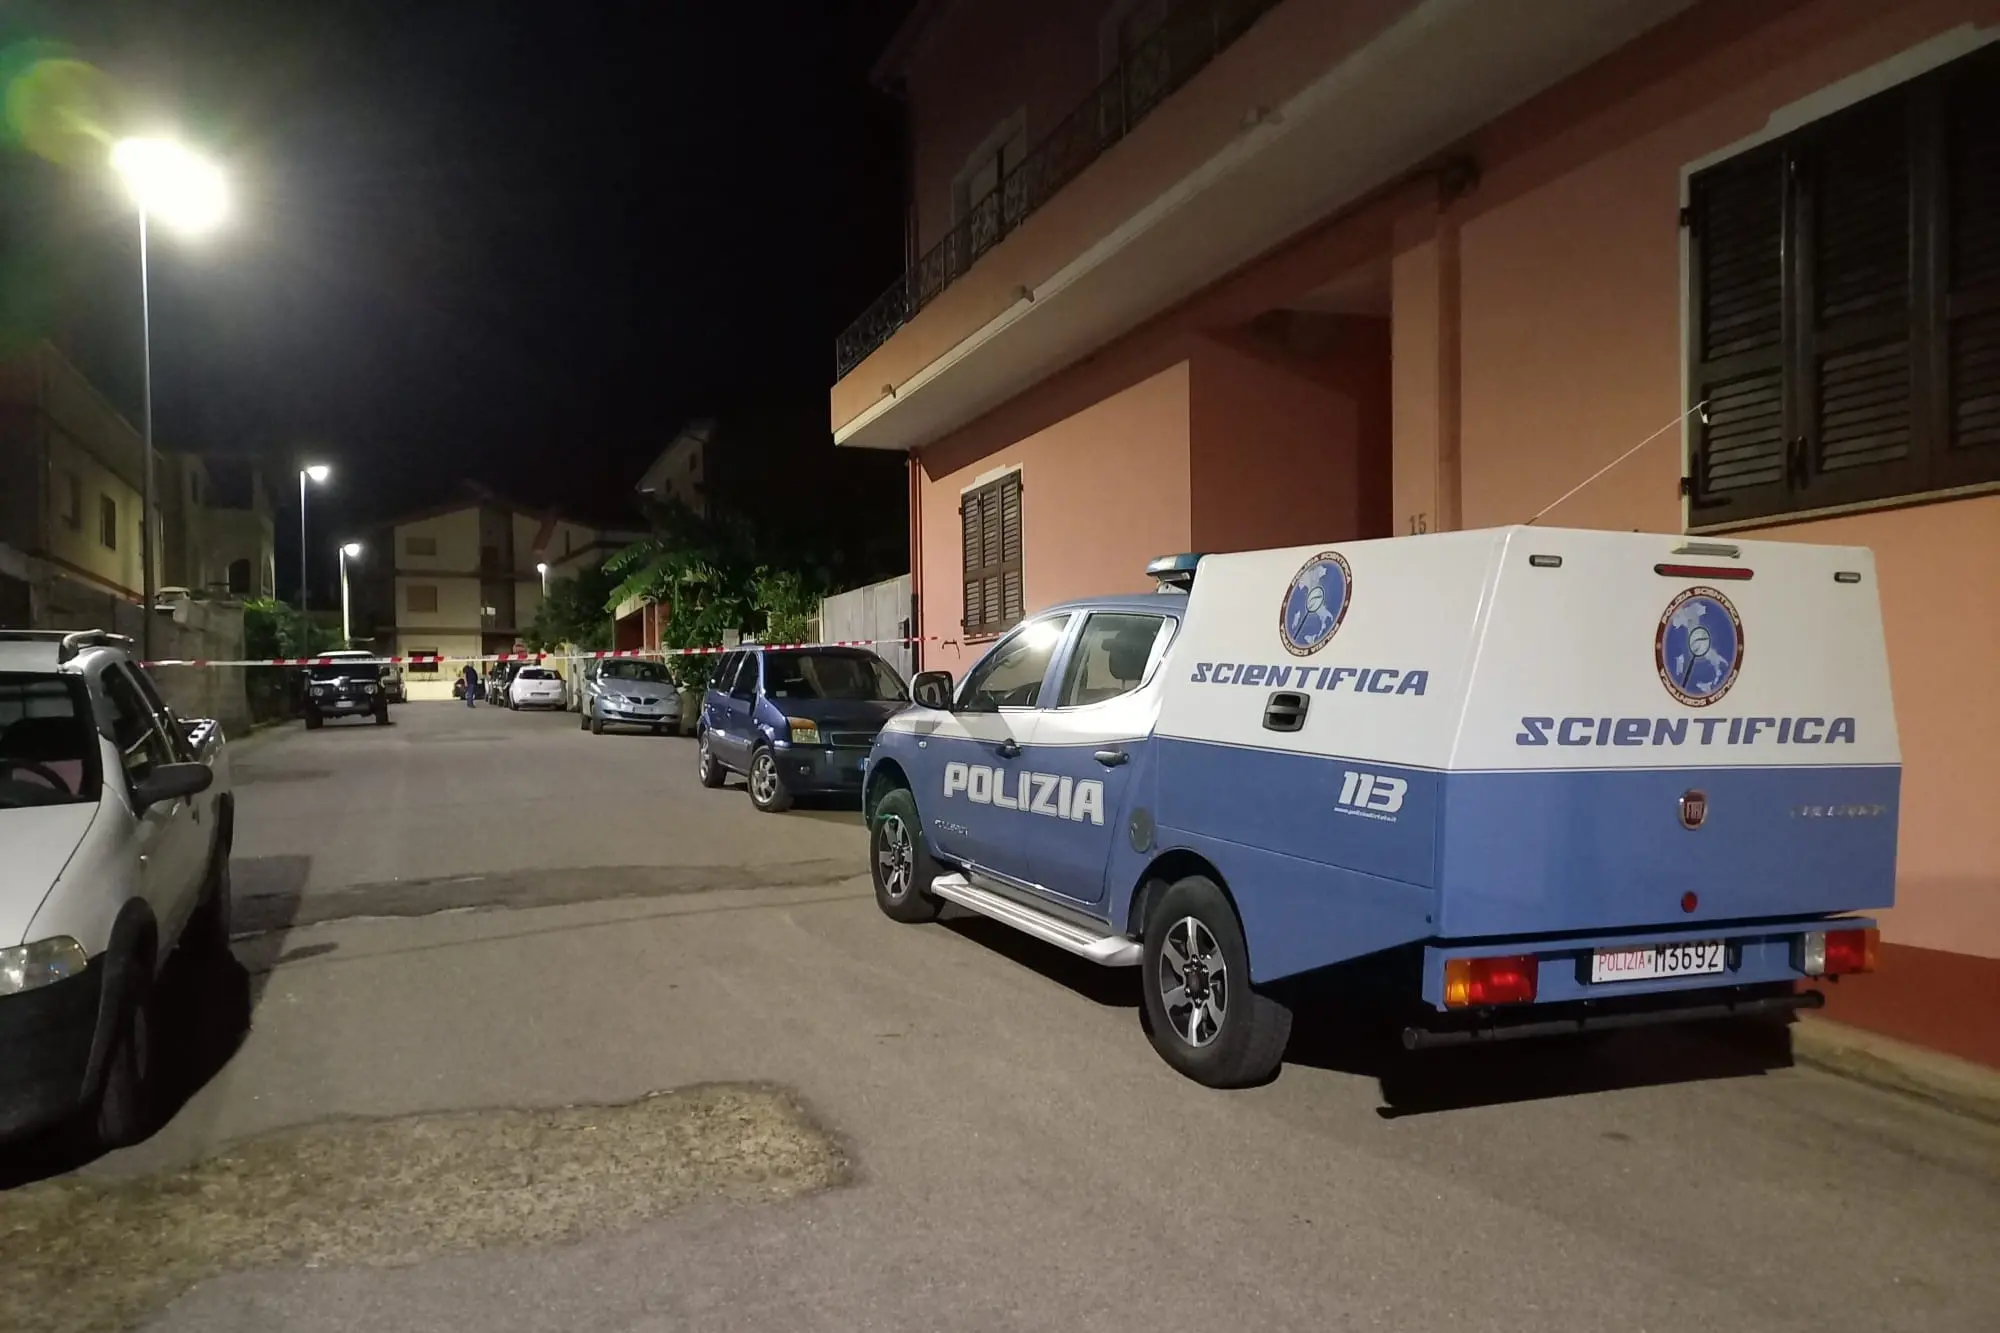 La Polizia Scientifica in via don Sturzo, a Domusnovas, di fronte alla casa dei Lancellotti (foto L'Unione Sarda - Farris)